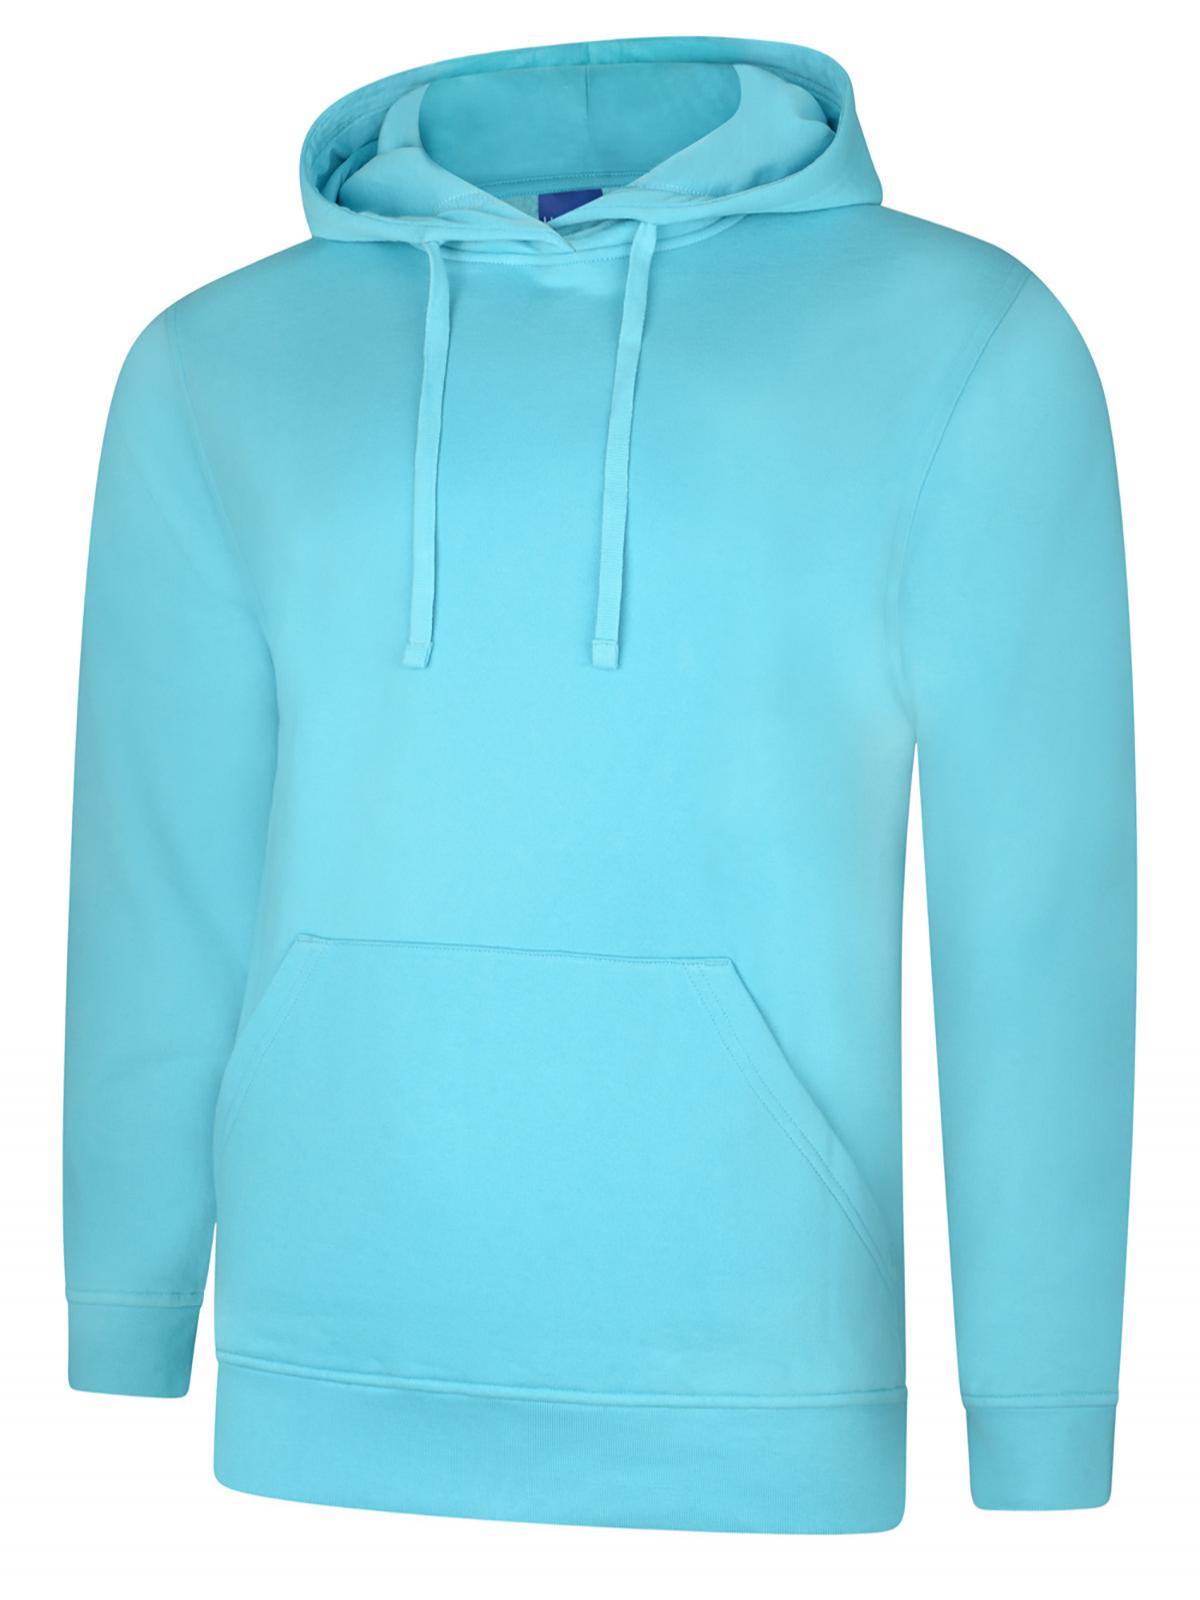 Deluxe Hooded Sweatshirt | Workwear, Sweatshirts | Embroidery In House